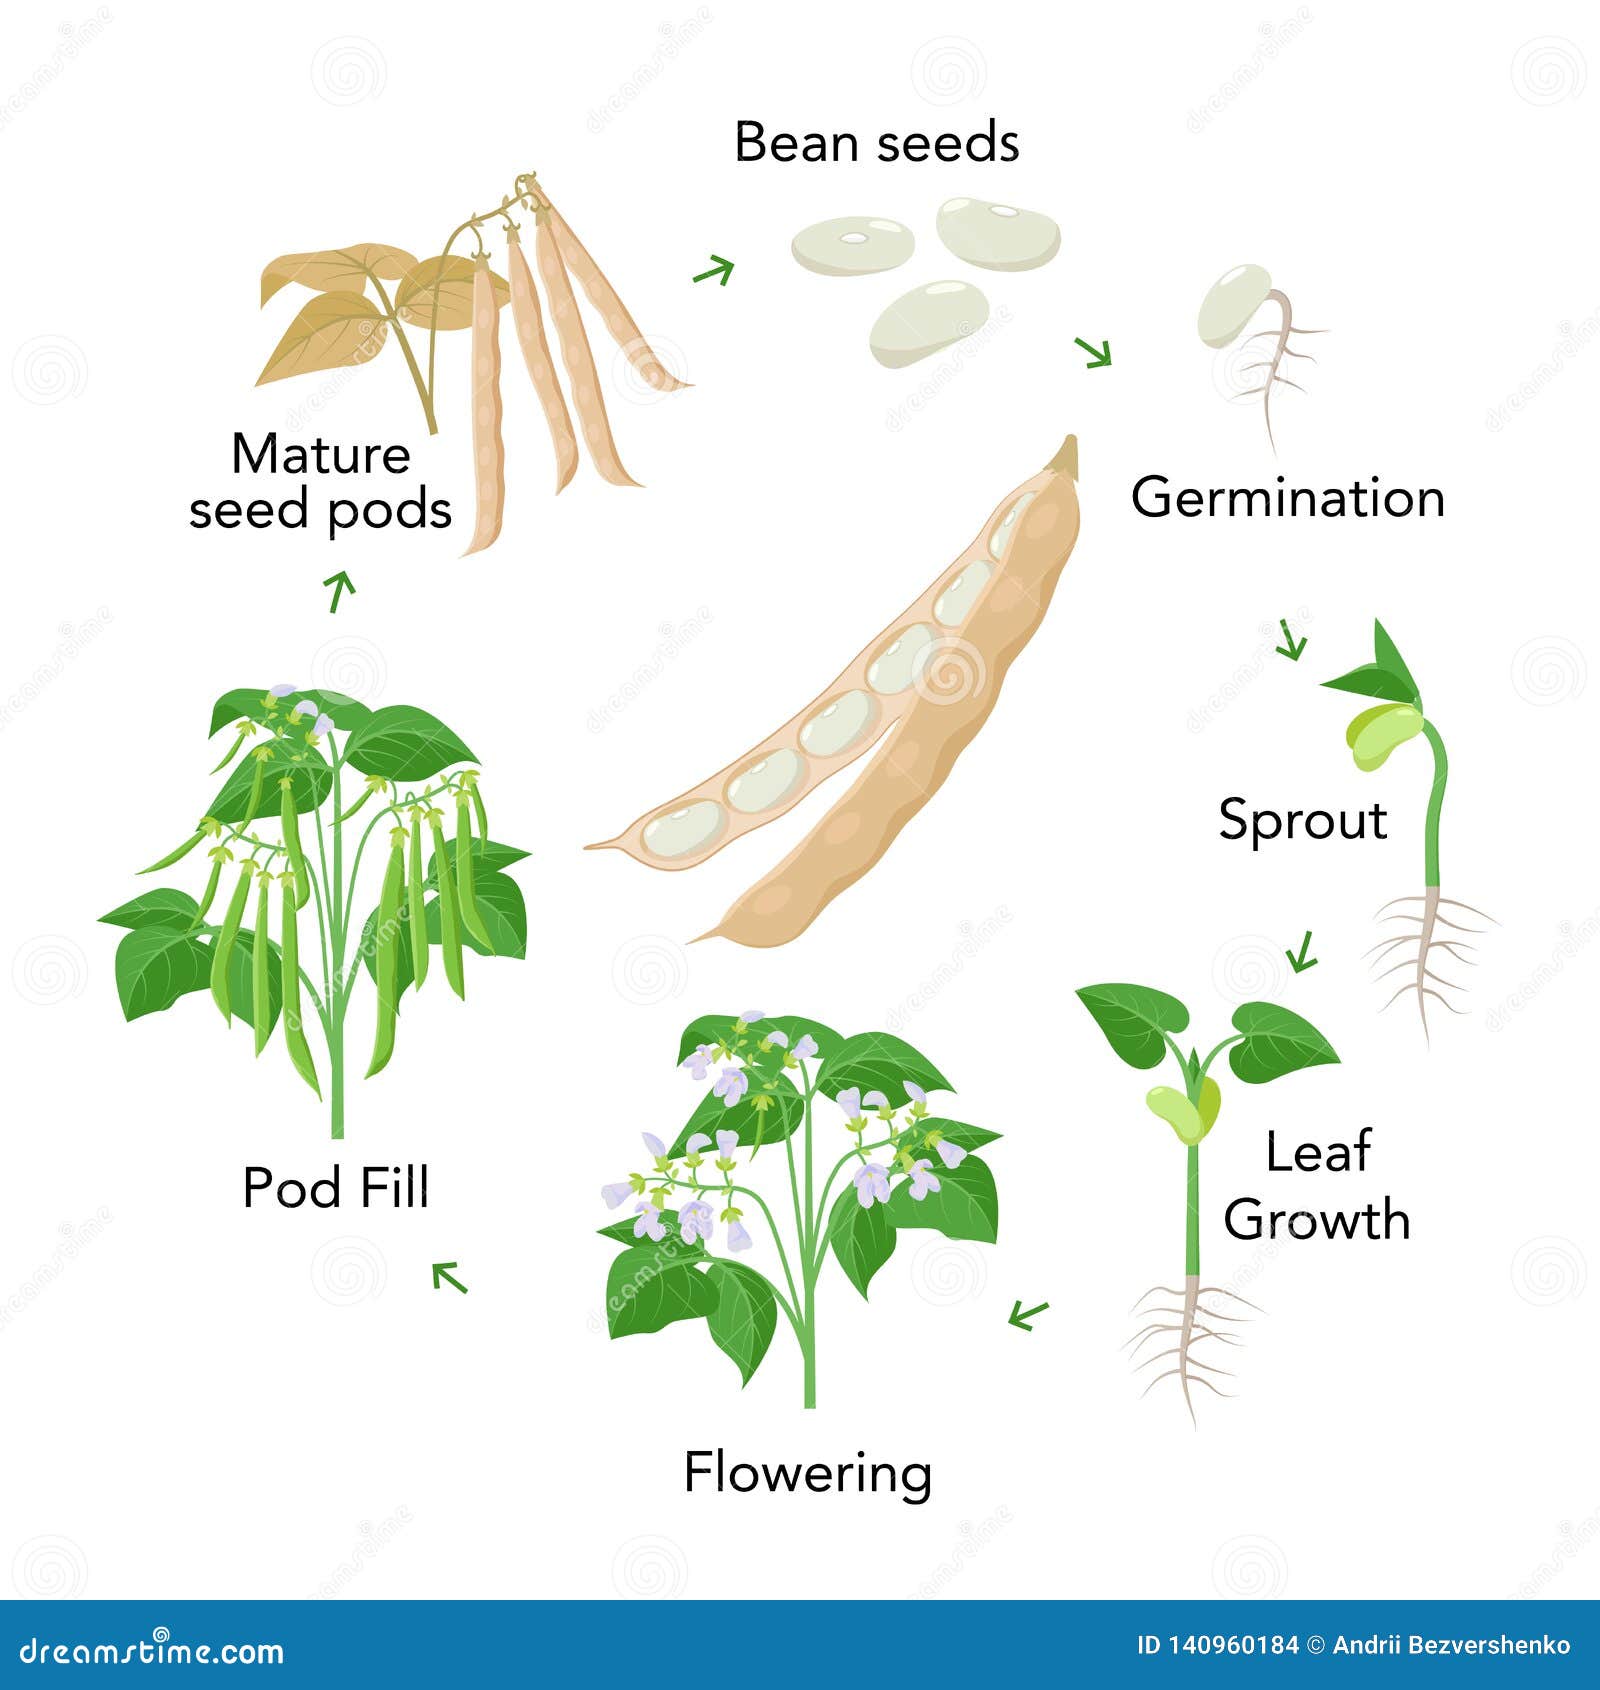 Green bean plant stages Idea | cathyshepherdot